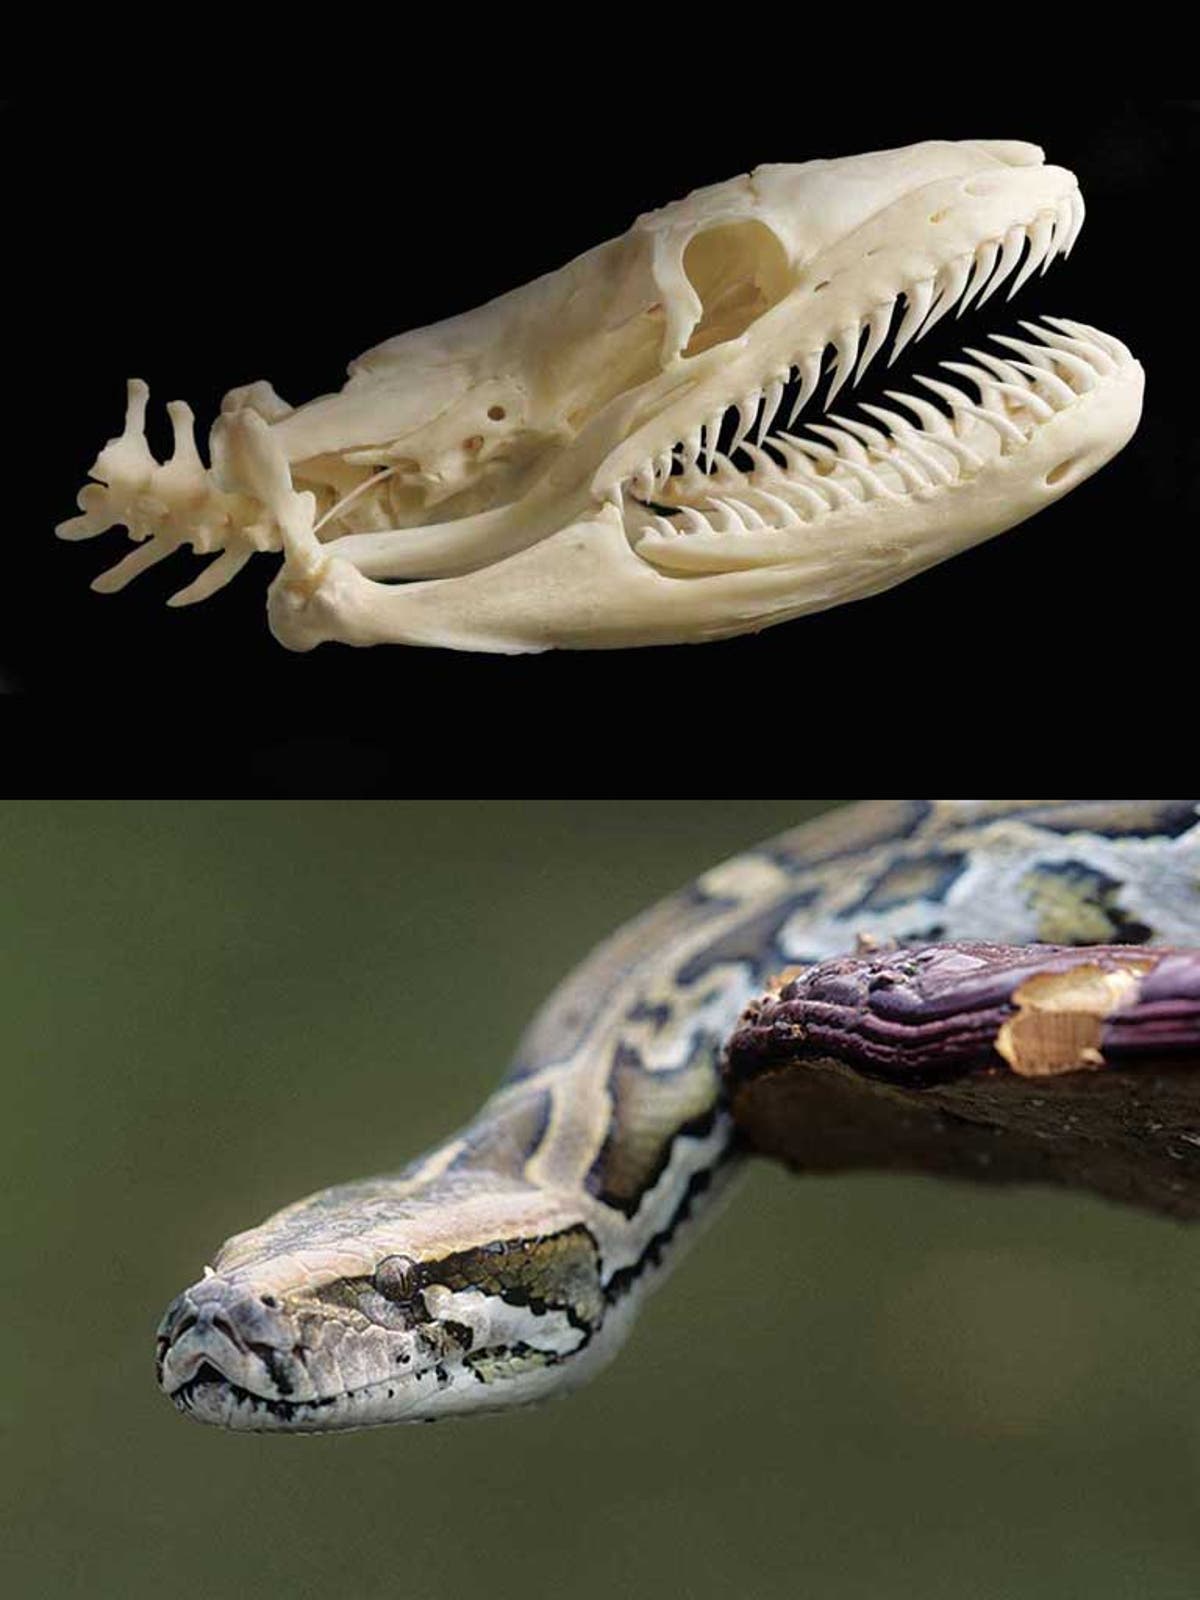 Строение питона. Скелет питона змеи. Анатомия королевского питона. Скелет королевского питона. Королевский питон челюсть.